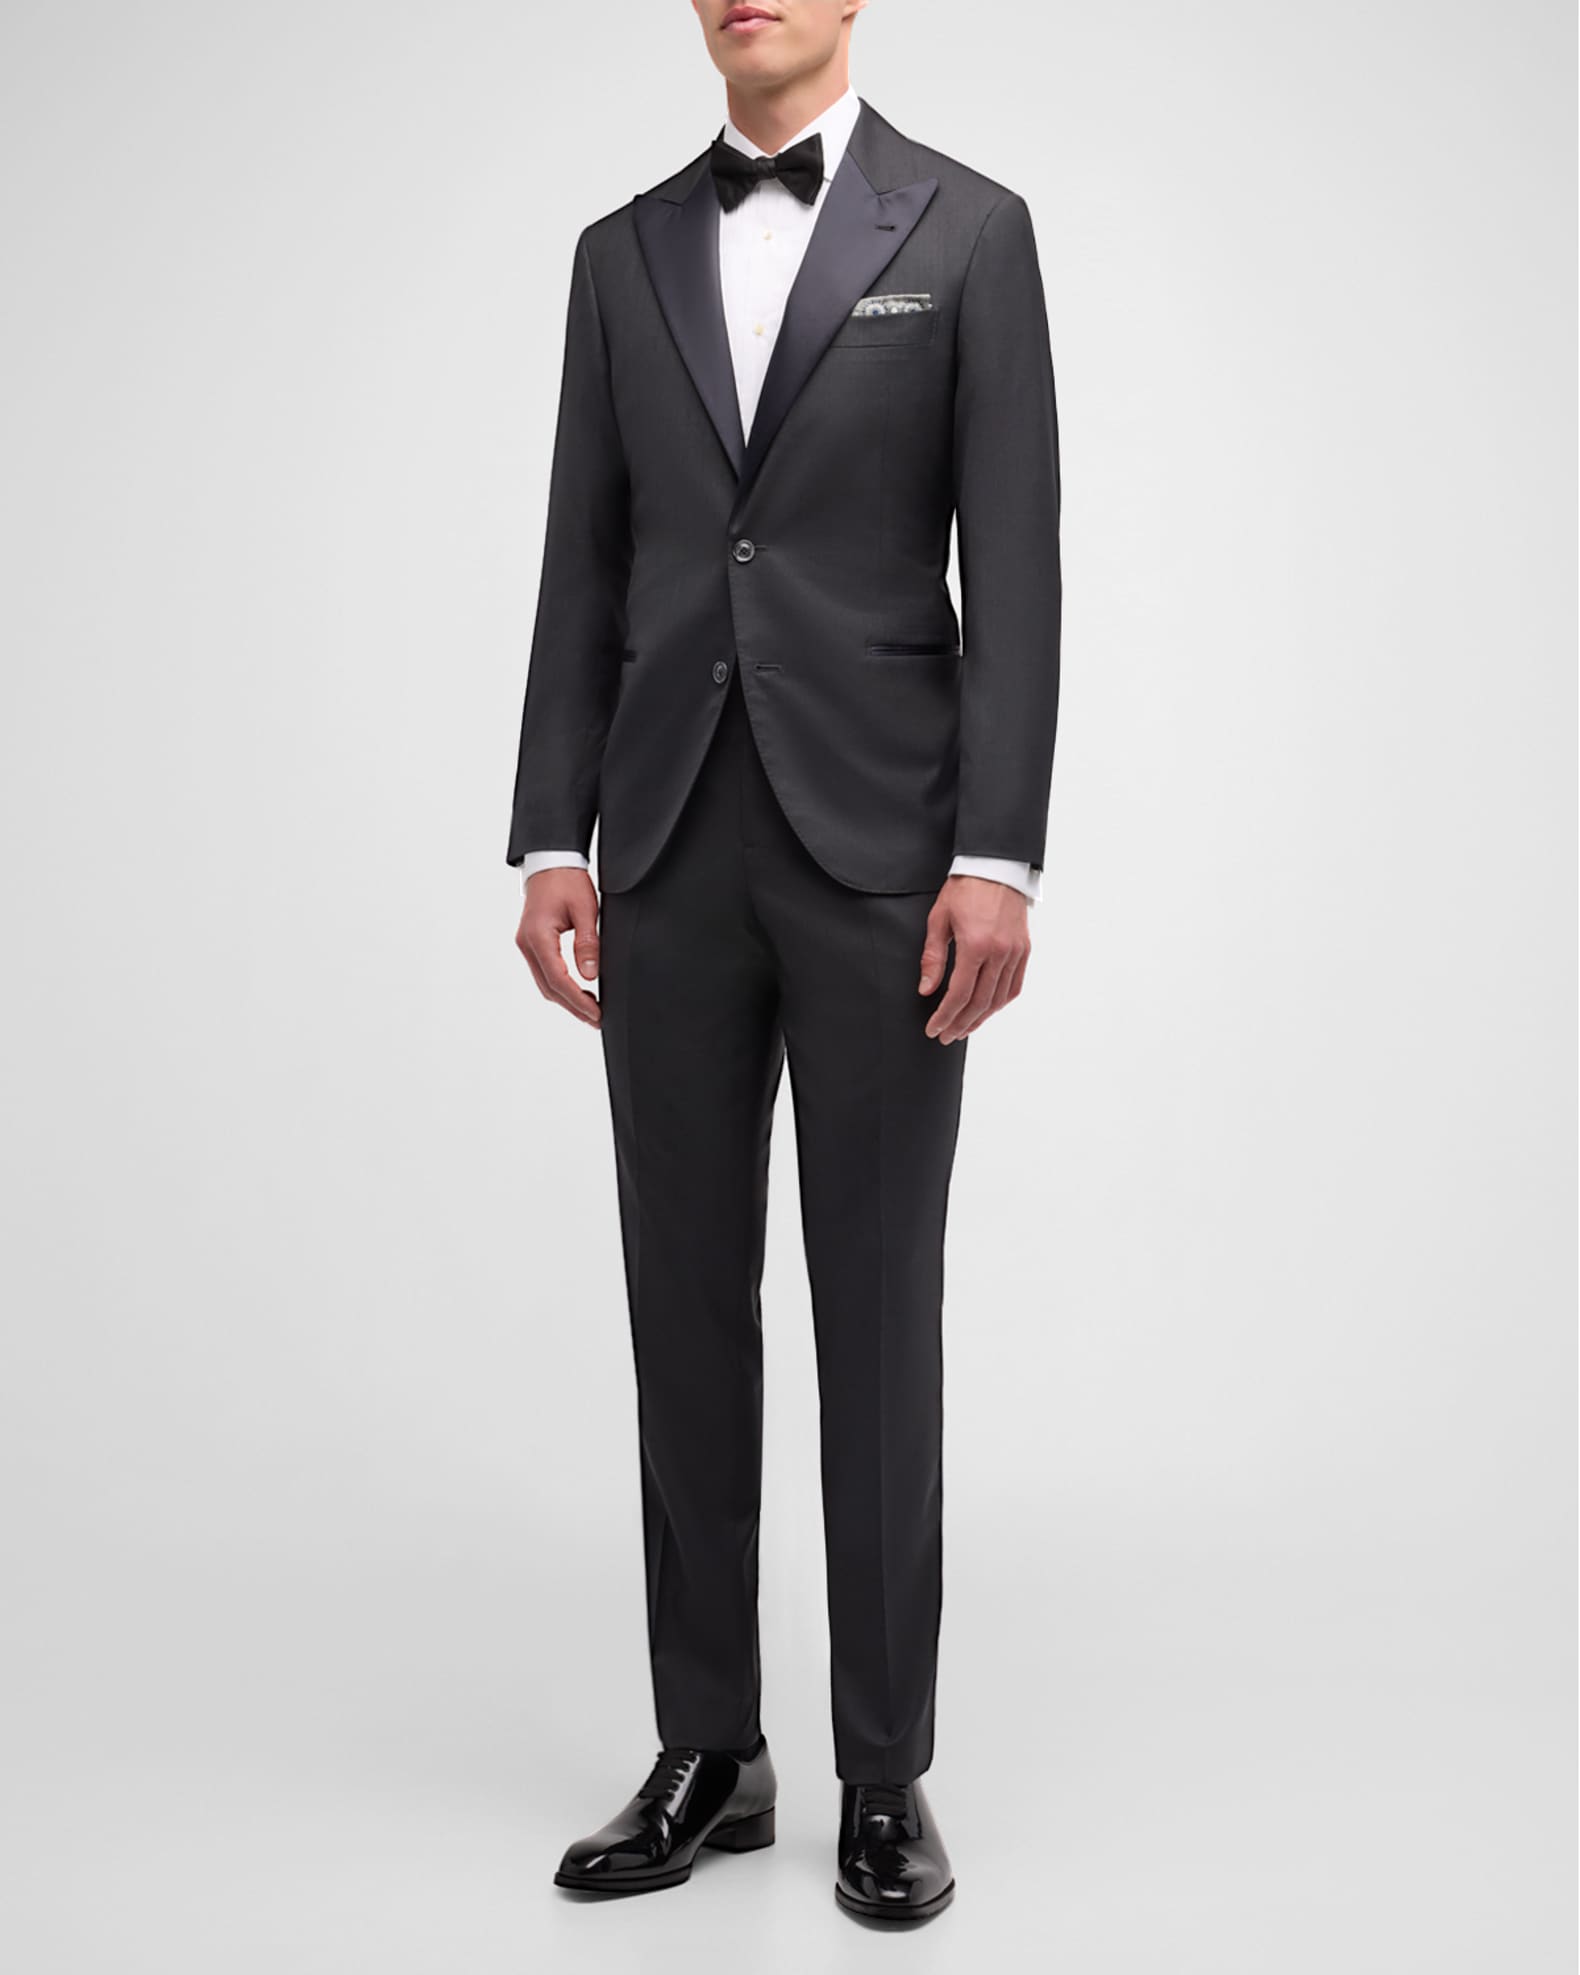 Brunello Cucinelli Men's Solid Peak-Lapel Tuxedo | Neiman Marcus